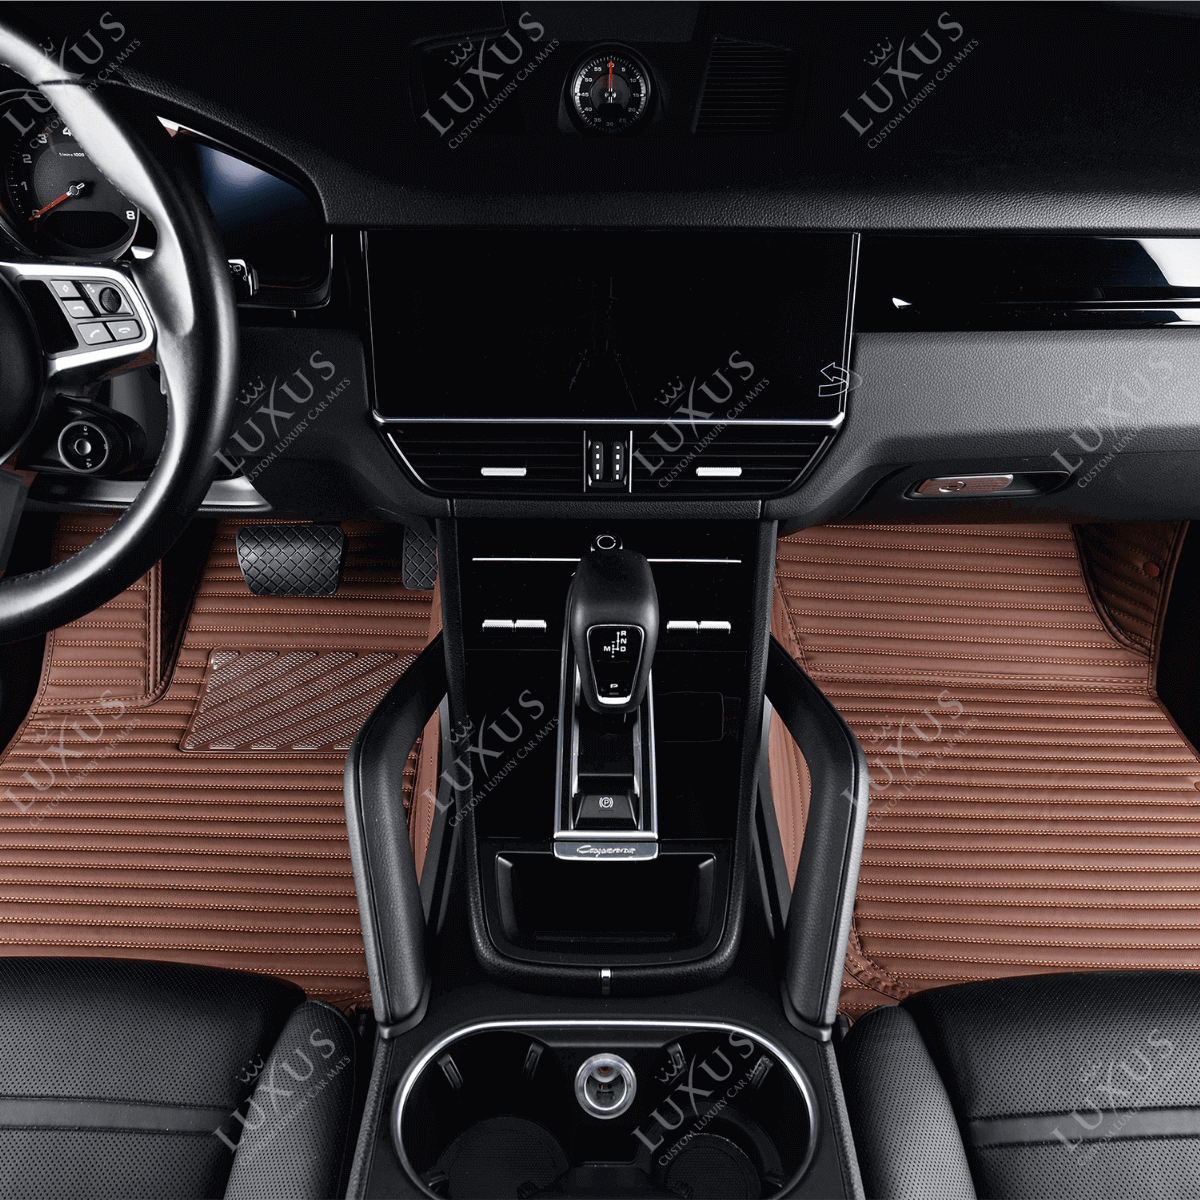 Luxus Car Mats™ – Luxus-Automatten-Set mit schokoladenbraunen Streifen